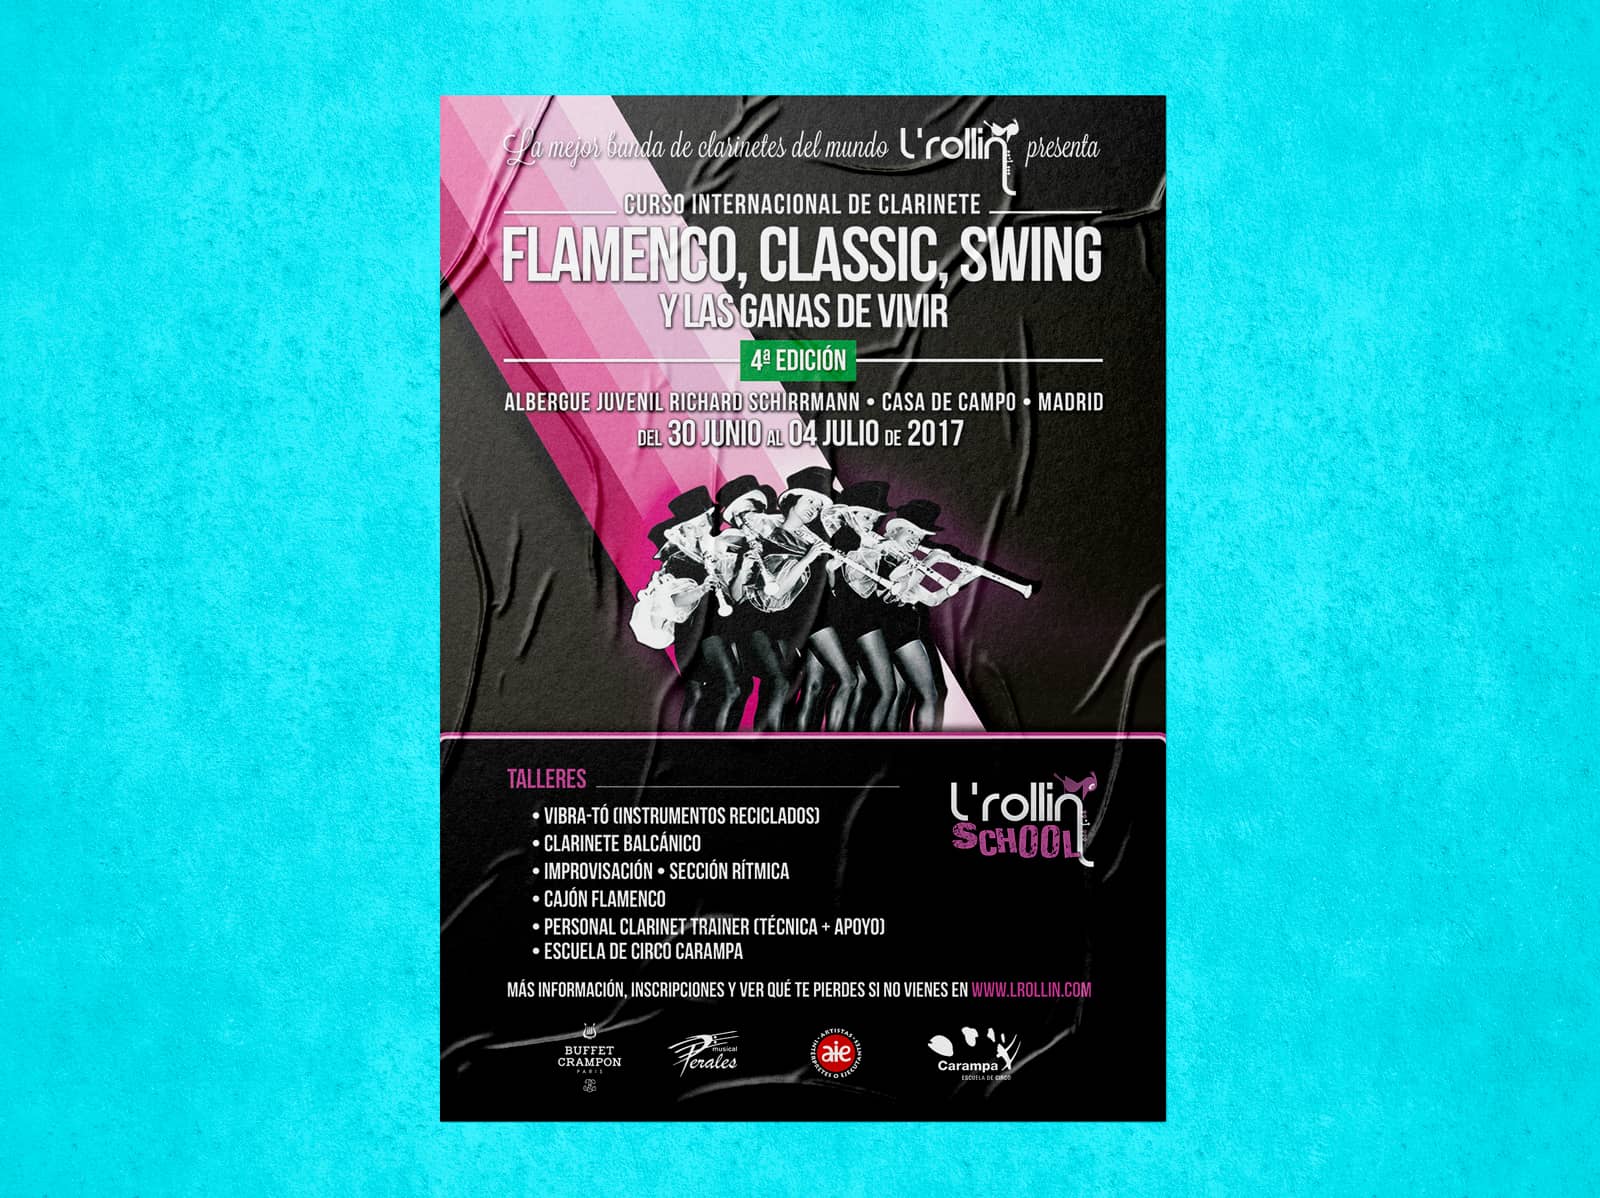 Poster para evento Flamenco Classic Swing y las ganas de vivir branding por The Acctitude